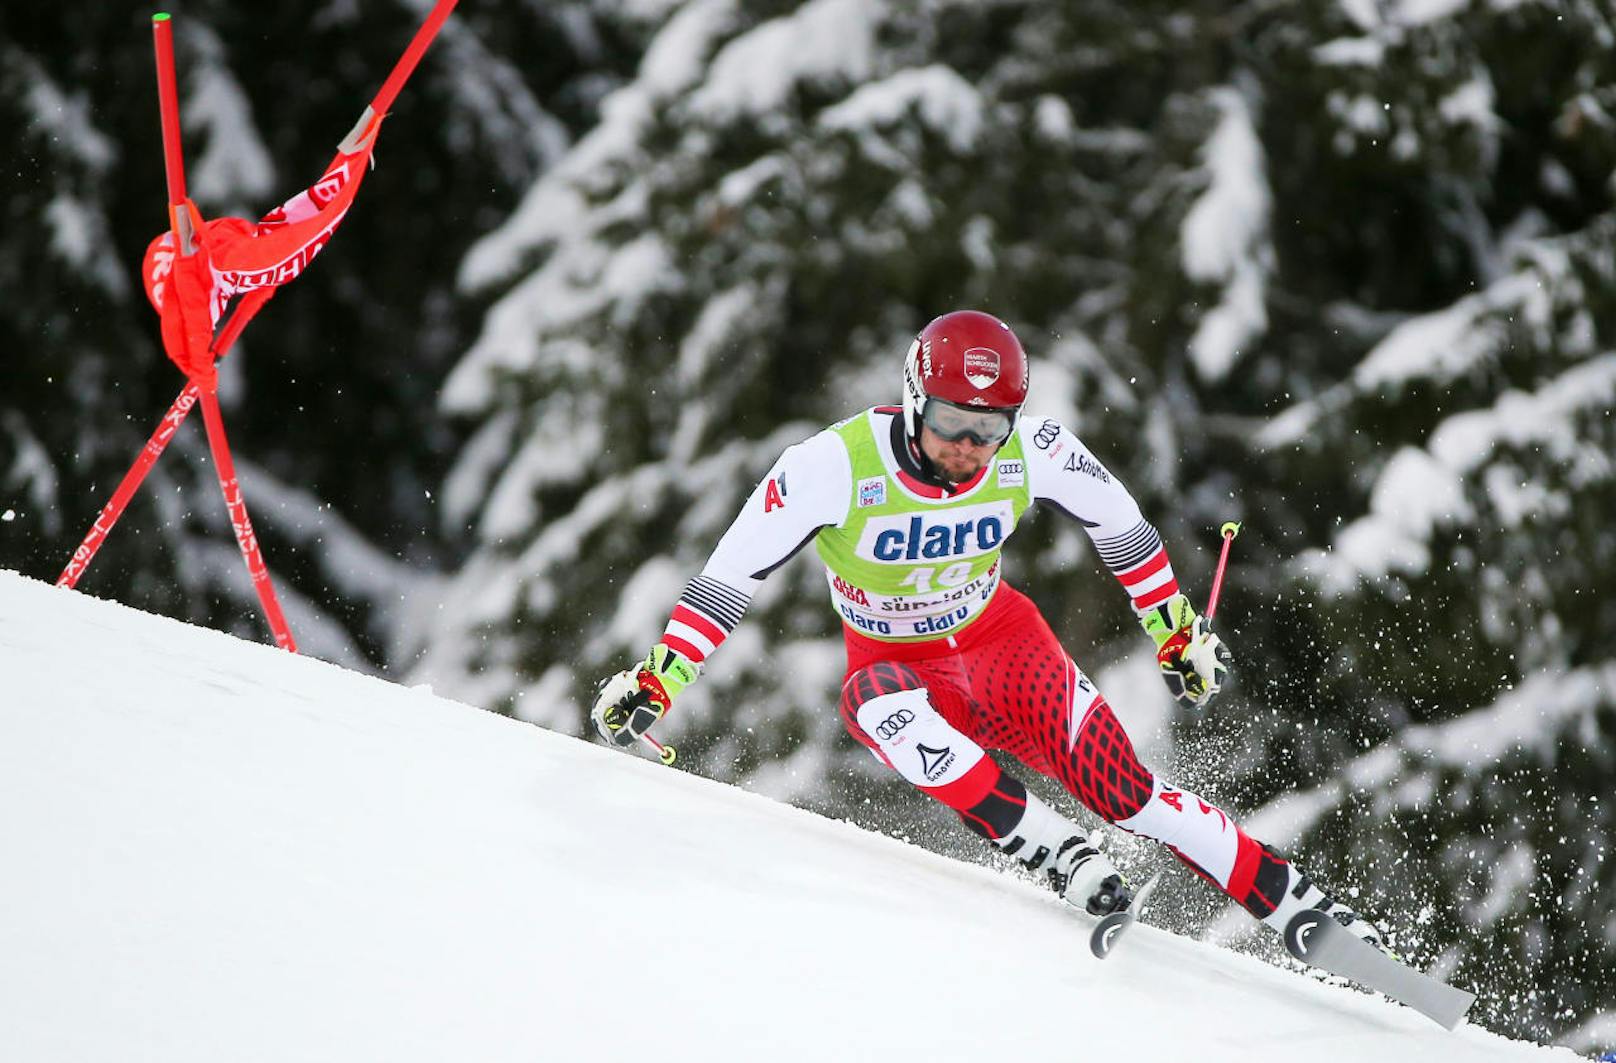 Daniel Meier fädelte beim FIS-Riesentorlauf in Berchtesgaden ein. Dabei riss ihm das Innenband im rechten Knie. Zusätzlich erlitt er eine Knochenprellung im linken Sprunggelenk und eine Gehirnerschütterung.